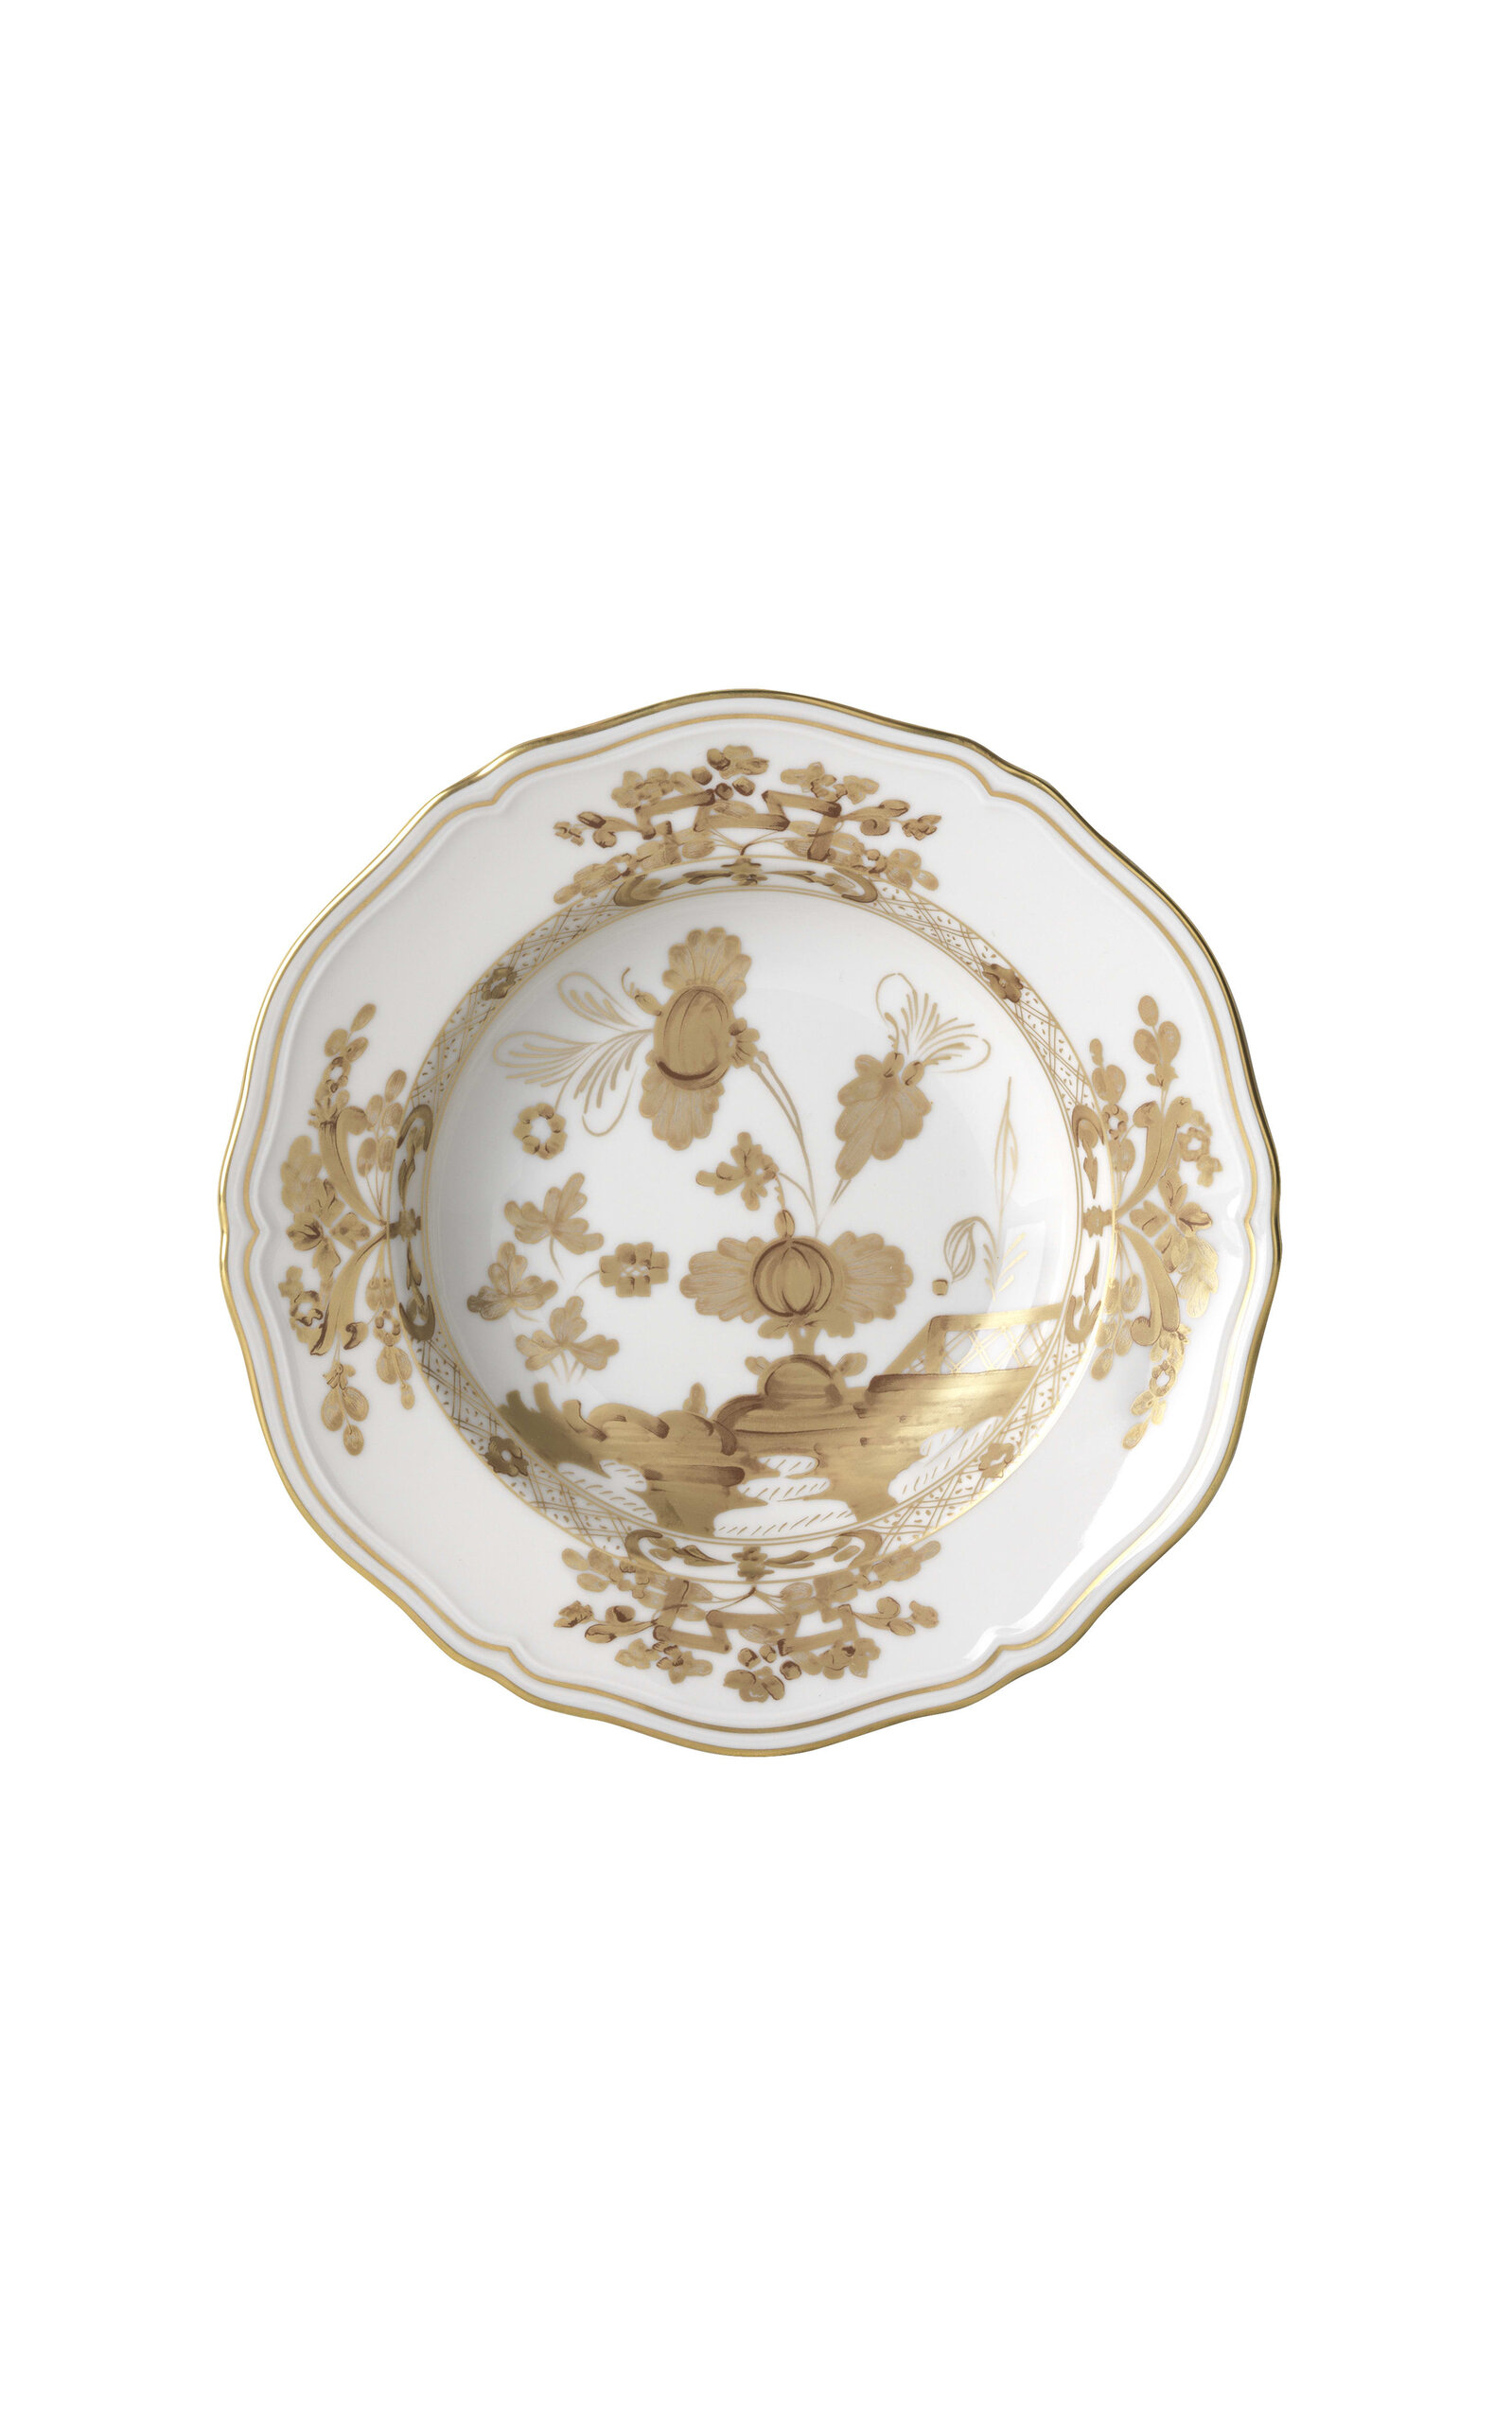 Ginori 1735 Antico Doccia Porcelain Soup Plate In White